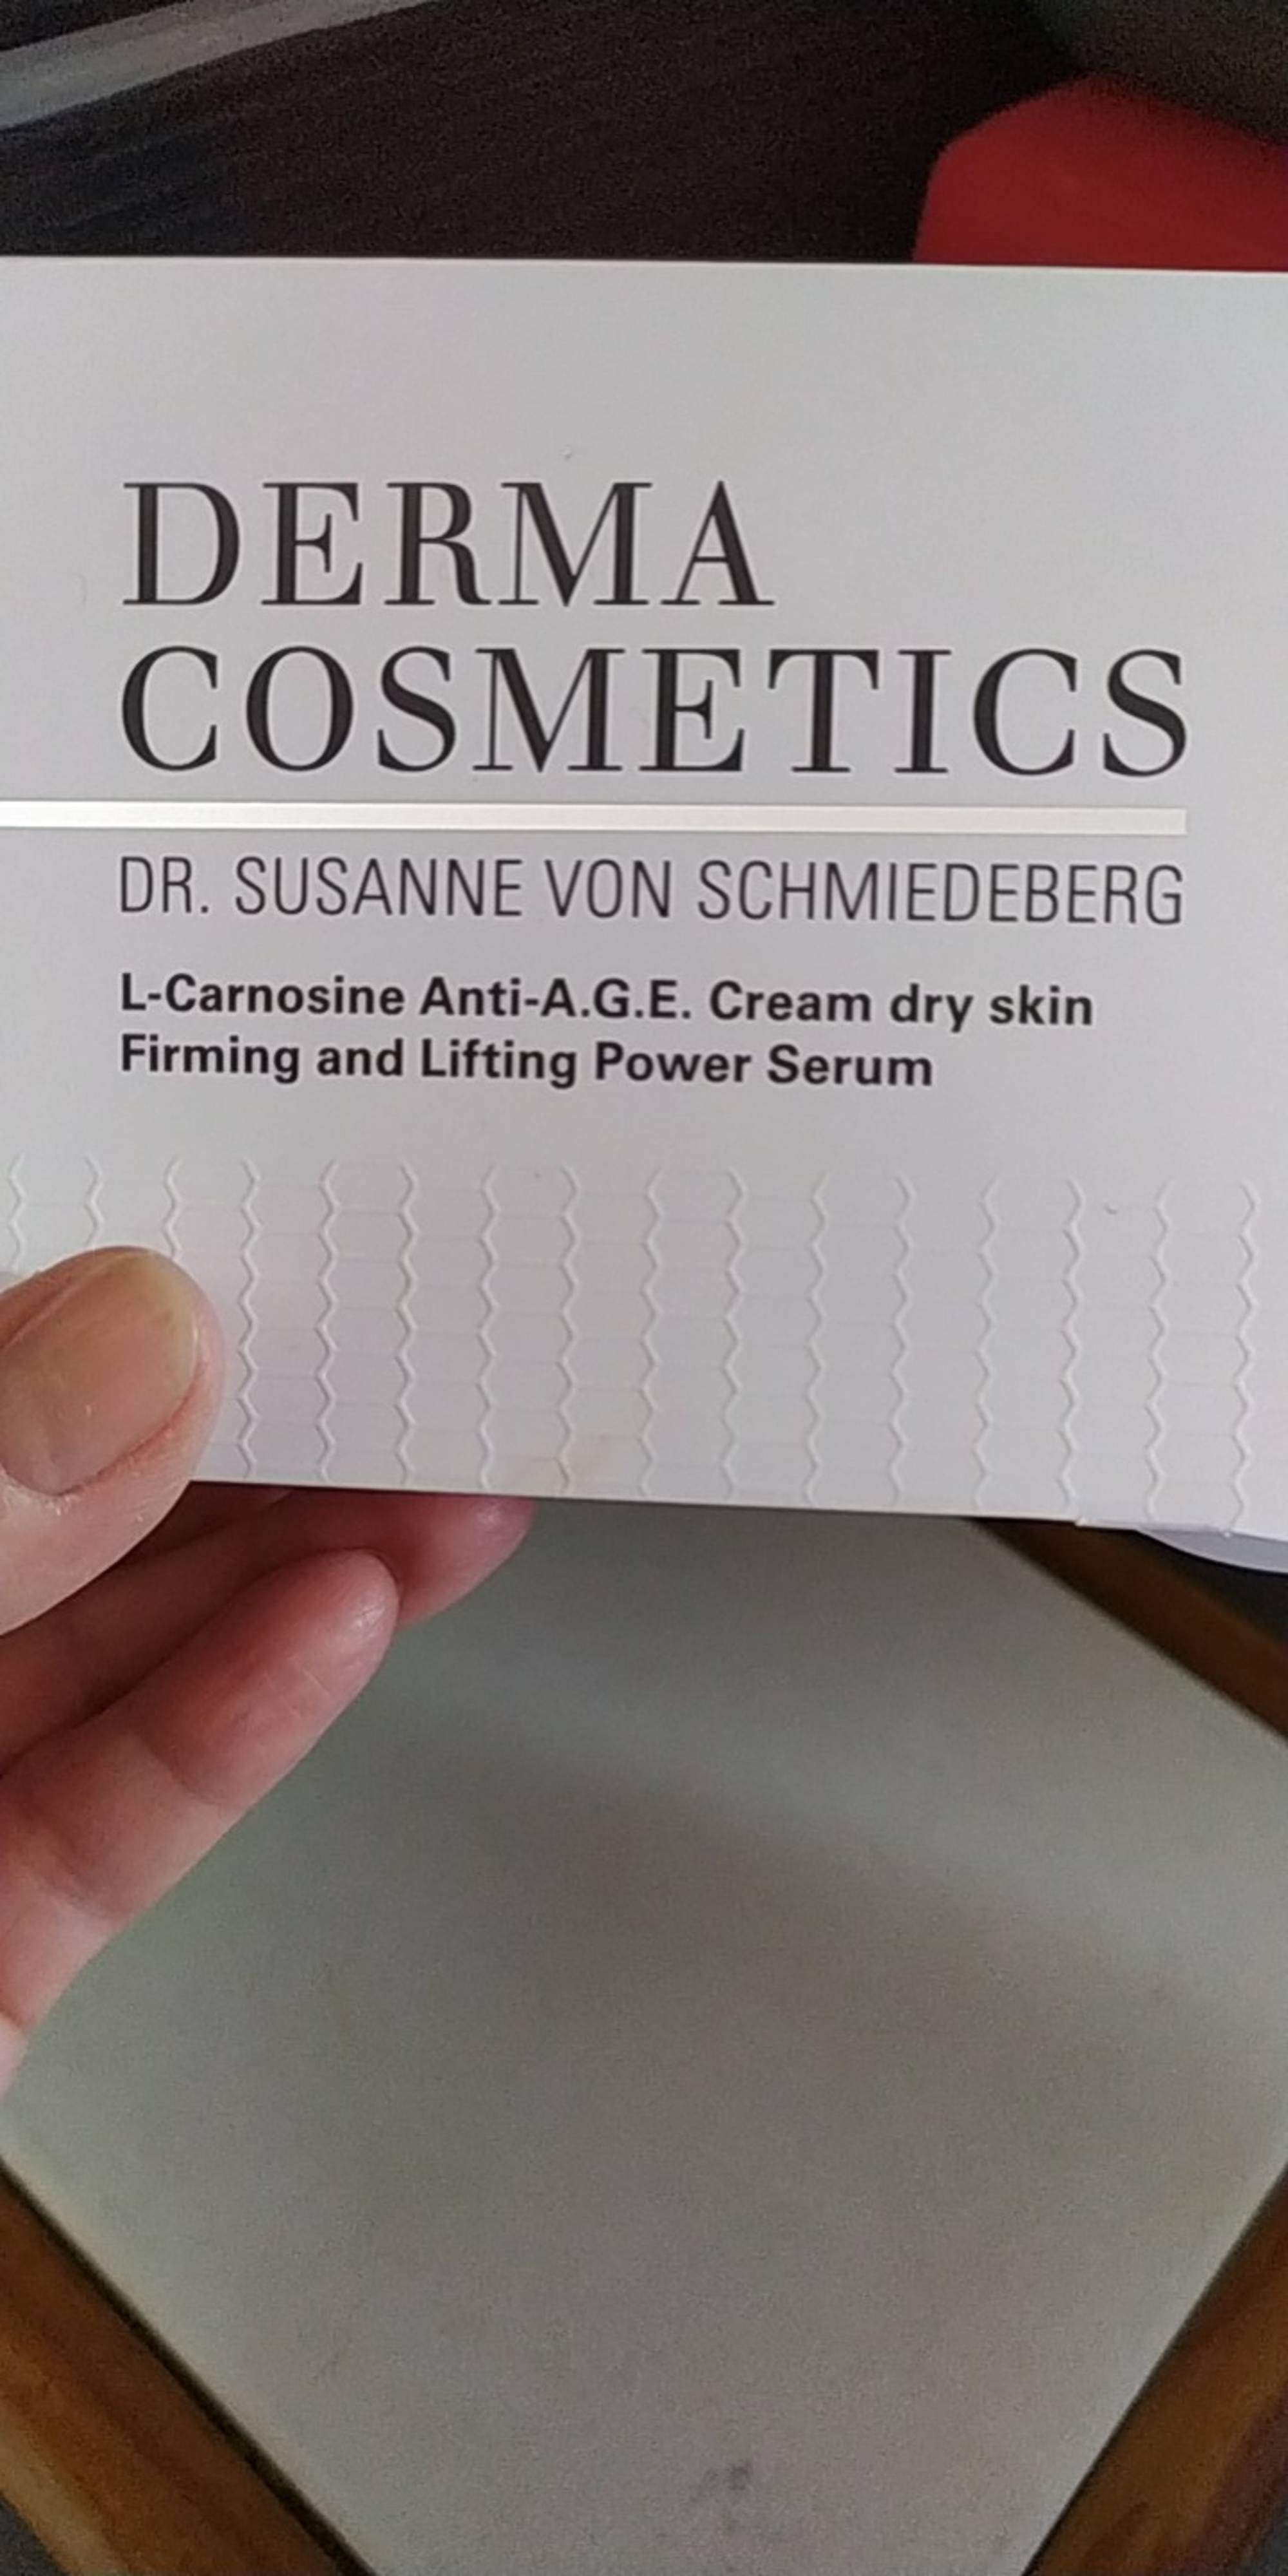 DERMA COSMETICS - Dr. Susanne Von Schmiedeberg - Firming and Lifting Power Serum